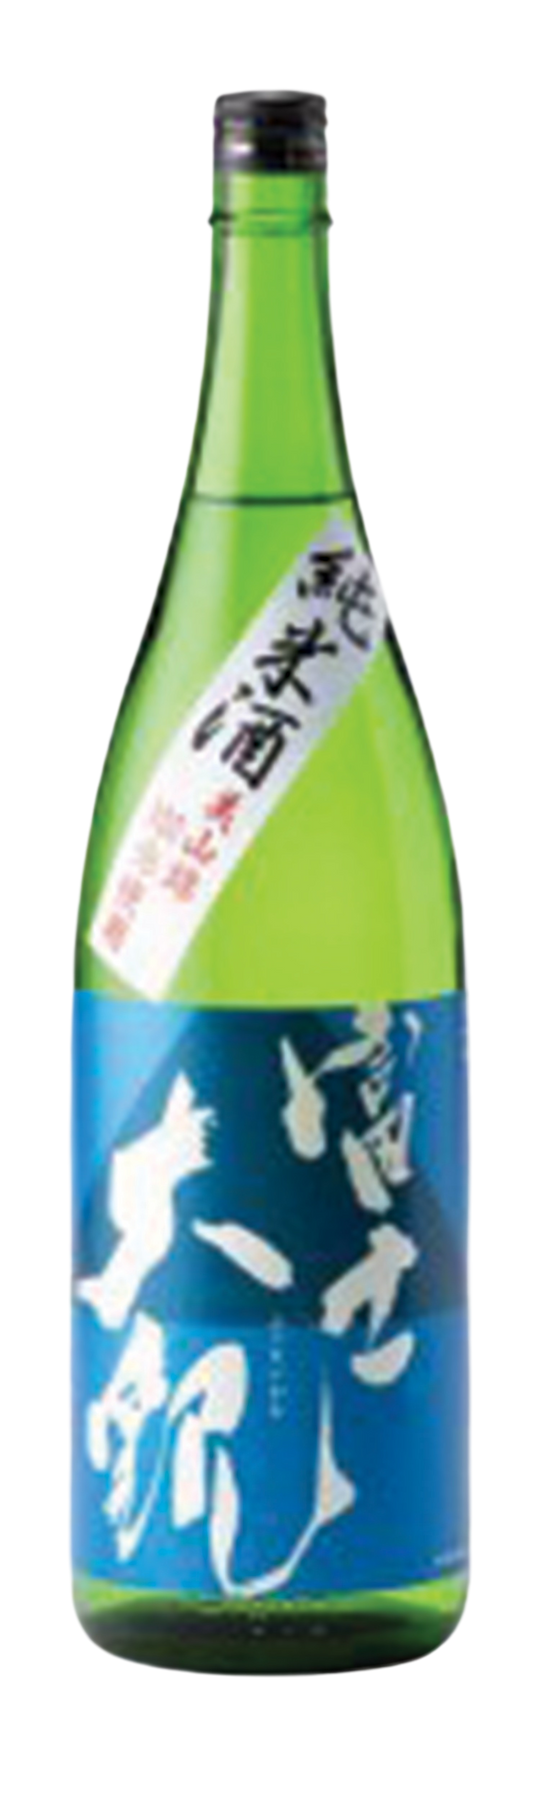 Morishima Shuzo Fujitaikan Blue Label 15% 72cl Saké